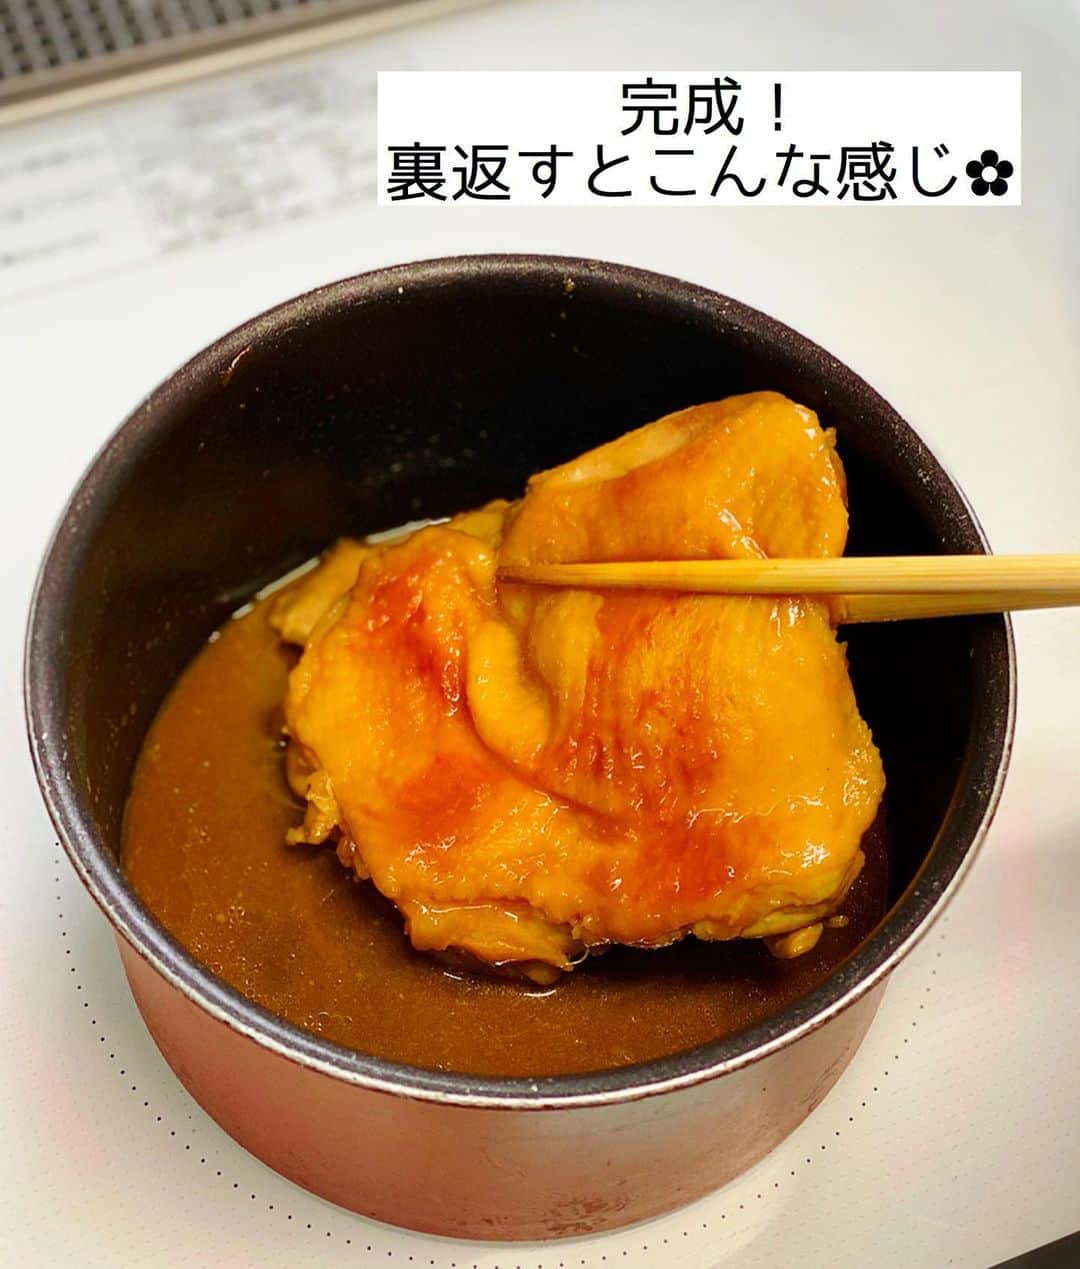 Mizuki【料理ブロガー・簡単レシピ】さんのインスタグラム写真 - (Mizuki【料理ブロガー・簡単レシピ】Instagram)「・﻿ 【#レシピ 】ーーーーーーーーーー﻿ ♡ 鶏肉のほったらかし味噌煮♡﻿ ［2品献立提案あり］﻿ ーーーーーーーーーーーーーーーー﻿ ﻿ ﻿ ﻿ おはようございます(*^^*)﻿ ﻿ 今日ご紹介させていただくのは﻿ ［鶏肉のほったらかし味噌煮］﻿ お鍋に調味料と鶏肉を入れたら﻿ ''いじらず触らず煮るだけ''の﻿ 超〜簡単レシピです(*´艸`)﻿ (途中でフタは外します💡)﻿ ﻿ ほったらかしで煮るだけで﻿ しっかり味が染みますよ〜♡﻿ これとってもラクなので﻿ よかったらお試し下さいね(*^^*)﻿ ﻿ ＊【#今どき和食 】P.24掲載﻿ 〈鶏肉のほったらかししょうゆ煮〉の﻿ アレンジレシピです♡IGTVに保存済☆﻿ ﻿ ﻿ ﻿ ＿＿＿＿＿＿＿＿＿＿＿＿＿＿＿＿＿＿＿＿﻿ 【2人分】﻿ 鶏もも肉...大1枚(300g)﻿ ●水...100ml﻿ ●酒...大2﻿ ●砂糖・醤油・味噌...各小2﻿ ﻿ 1.小さめの鍋に●を入れてよく混ぜ、鶏肉を皮目を下にして加えて中火にかける。煮立ったらフタをし、弱めの中火で12分煮る。フタを外し、煮汁が少なくなるまで4〜5分煮る。﻿ 2.食べやすい大きさに切って器に盛る。﻿ ￣￣￣￣￣￣￣￣￣￣￣￣￣￣￣￣￣￣￣￣﻿ ﻿ ﻿ ﻿ 《ポイント》﻿ ♦︎小さめの鍋を使用して下さい♩私は16cmの鍋を使用しています♩﻿ ♦︎鶏肉を裏返したりする必要はありません♩﻿ ♦︎煮詰め具合で濃さを調節できます♩薄味がお好きな方は煮汁を多めに残して下さい♩﻿ ﻿ ﻿ ﻿ ﻿ ﻿ ＿＿＿＿＿＿＿＿＿＿＿＿＿＿＿﻿ 🥣🥣🥣2品献立提案🥣🥣🥣﻿ ￣￣￣￣￣￣￣￣￣￣￣￣￣￣￣﻿ 【合間に作れるおすすめ副菜】﻿ >長芋と水菜のじゃこサラダ(P.99)﻿ >玉ねぎとワカメの甘酢和え(P.92)﻿ (#Mizukiの2品献立 より)﻿ ﻿ 【献立の段取り】﻿ 鶏肉を火にかけ、﻿ ほったらしの時間に副菜を作る🥢﻿ ﻿ ﻿ ﻿ ﻿ ﻿ ﻿ _____________________________________﻿ \15分でいただきます/﻿ 📕#Mizukiの2品献立 📕﻿ (9月24日発売・マガジンハウス)﻿ ￣￣￣￣￣￣￣￣￣￣￣￣￣￣￣￣￣﻿ ﻿ 忙しい私たちには﻿ 2品くらいがちょうどいい！﻿ 『しんどくない献立、考えました』﻿ ￣￣￣￣￣￣￣￣￣￣￣￣￣￣￣￣﻿ ﻿ ーーーーーPART.1 ーーーーー﻿ 【Mizukiのお墨つき！２品献立ベスト10】﻿ 約15分でできる10献立をご紹介！﻿ メインは全部フライパン、副菜はレンチンor混ぜるだけ♡﻿ ﻿ ーーーーーPART.2 ーーーーー﻿ 【フライパンひとつ！今夜のメインおかず】﻿ 献立の主役になる肉や魚のおかず50品！﻿ Part3の副菜と組み合わせれば﻿ 献立のバリエーションが広がりますよ♩﻿ ﻿ ーーーーー PART.3 ーーーーー﻿ 【合間に作れる！ 野菜別かんたん副菜】﻿ レンチンor和えるだけの副菜レシピを﻿ 素材別にたっぷり収録♩﻿ ﻿ ーーーーー番外編ーーーーー﻿ 【ひとつで満足！ご飯＆麺】﻿ 【具だくさん！おかずスープ】﻿ 【オーブンいらずのおやつレシピ】﻿ ￣￣￣￣￣￣￣￣￣￣￣￣￣￣￣￣￣￣﻿ ﻿ ﻿ ﻿ Amazon予約プレゼントキャンペーン﻿ 🎁🎁🎁🎁🎁🎁🎁🎁🎁🎁🎁🎁﻿ ＿＿＿＿＿＿＿＿＿＿＿＿＿＿＿＿＿﻿ 新刊【2品献立】をAmazonで予約し﻿ インスタにアップして下さった方に﻿ 抽選で［フライパン］or［ボールセット］を﻿ プレゼントさせていただきます♩﻿ ￣￣￣￣￣￣￣￣￣￣￣￣￣￣￣￣￣﻿ ﻿ ✅【インスタ応募方法▼】﻿ ①本の表紙の画像を1枚目に、﻿ Amazonで予約したことがわかる画像を﻿ 2枚目に貼り付け(どちらもスクショでOK)﻿ ［#Mizukiの2品献立 ］のハッシュタグを付けて投稿！﻿ 以上で応募完了です(*^^*)﻿ ﻿ ￣￣￣￣￣￣￣￣￣￣￣￣￣￣￣￣￣￣﻿ ハイライトにリンク🔗あります💓﻿ ﻿ ﻿ ﻿ ﻿ ﻿ ﻿ ￣￣￣￣￣￣￣￣￣￣￣￣￣￣￣￣￣￣﻿ レシピを作って下さった際や﻿ レシピ本についてのご投稿には﻿ タグ付け( @mizuki_31cafe )して﻿ お知らせいただけると嬉しいです😊💕﻿ ﻿ ﻿ ﻿ ﻿ ﻿ #鶏肉#味噌#ほったらかし煮#Mizuki#簡単レシピ#時短レシピ#節約レシピ#料理#フーディーテーブル#マカロニメイト#おうちごはん#デリスタグラマー#料理好きな人と繋がりたい#食べ物#料理記録#おうちごはんlover#写真好きな人と繋がりたい#foodpic#cooking#recipe#lin_stagrammer#foodporn#yummy#f52grams#鶏肉のほったらかし味噌煮m」9月23日 7時11分 - mizuki_31cafe